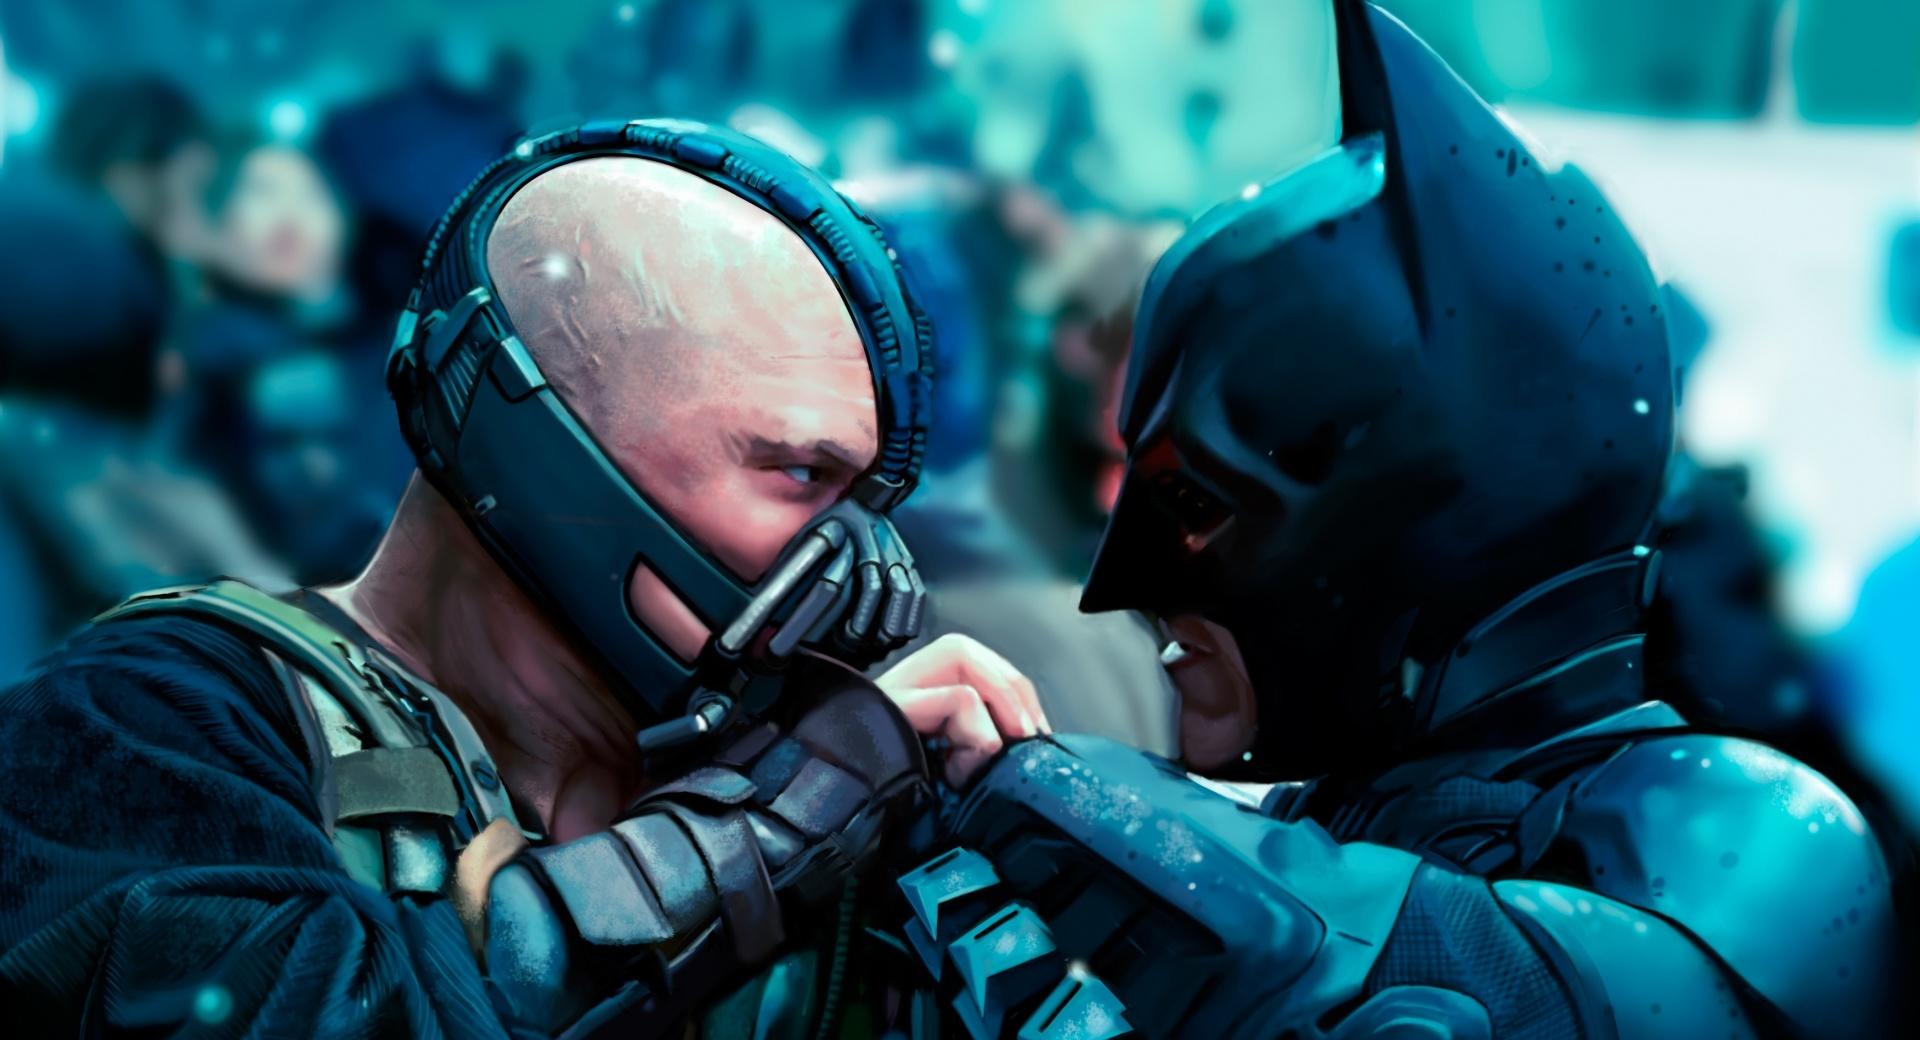 Batman vs Bane at 1024 x 768 size wallpapers HD quality